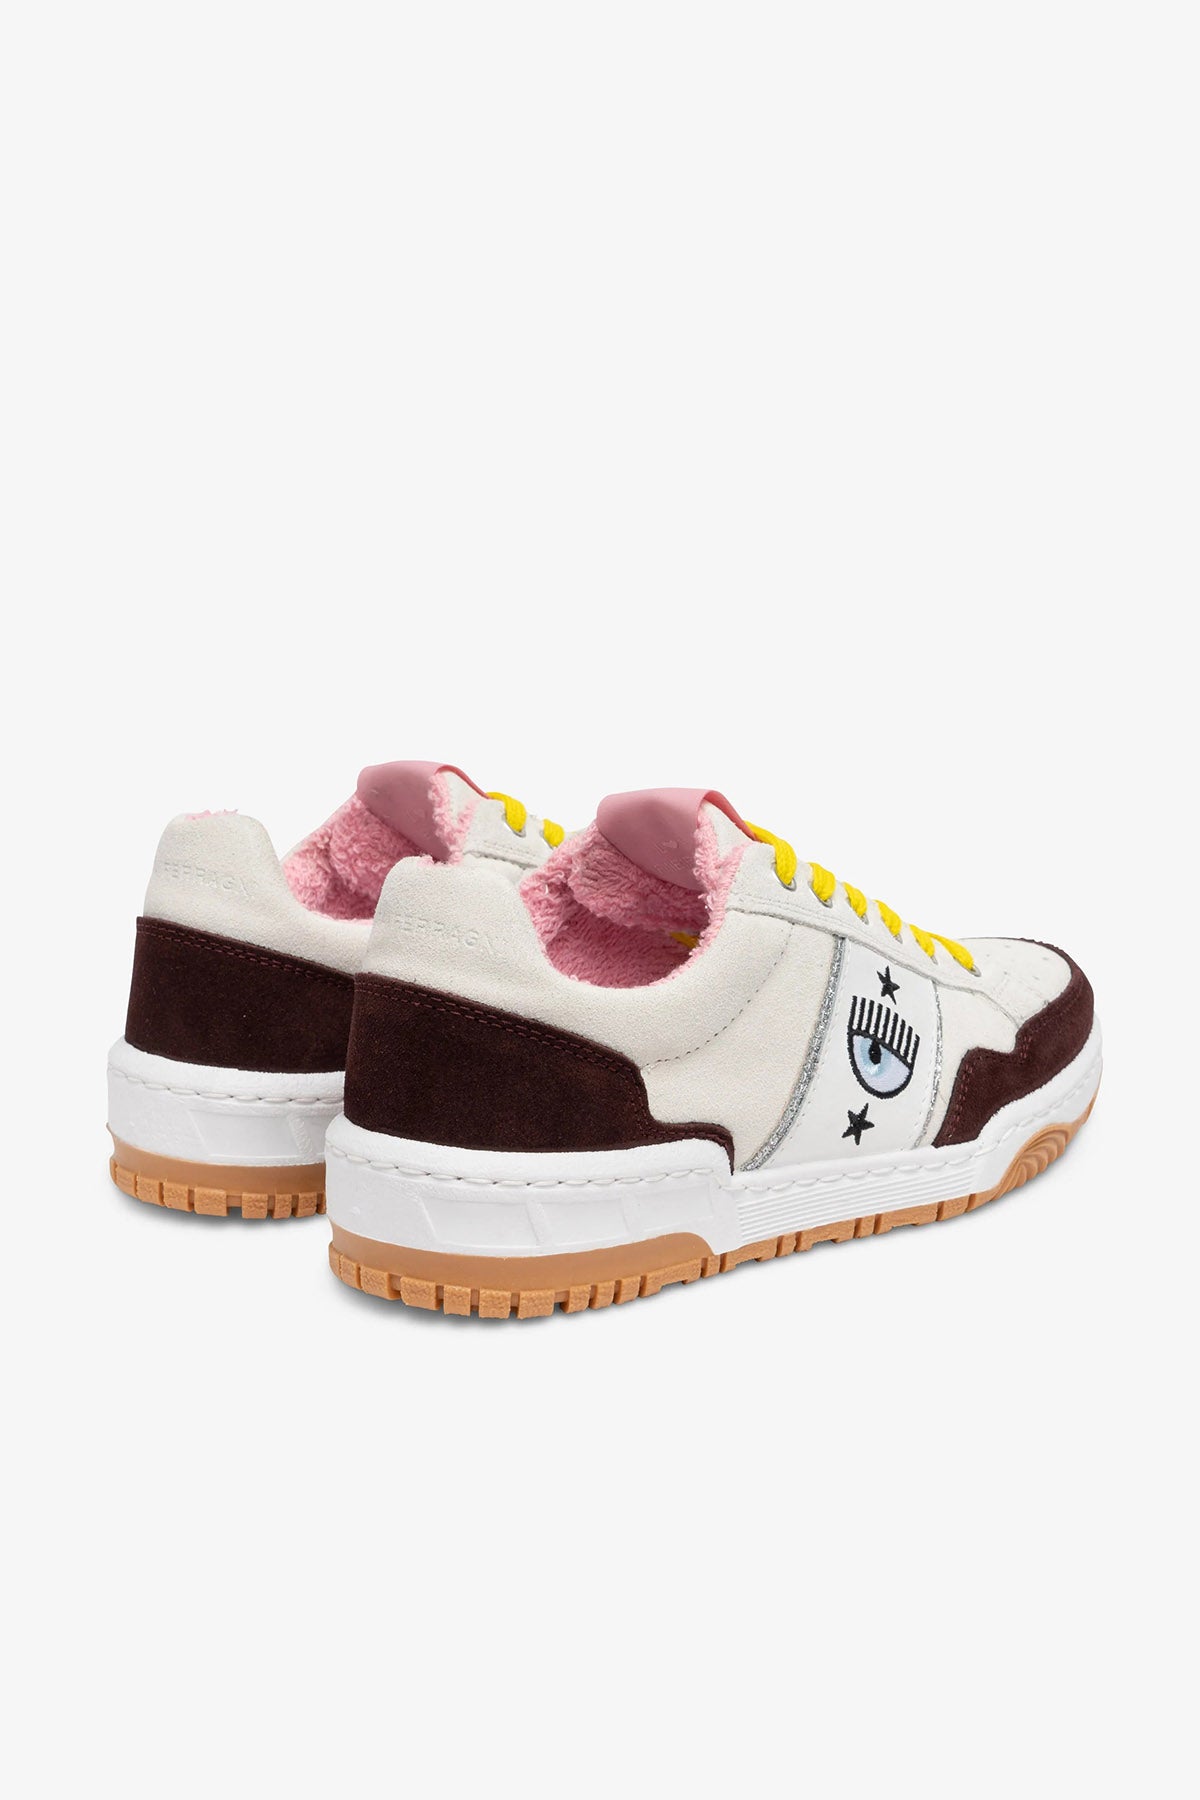 Chiara Ferragni İçi Polarlı Göz Logolu Nubuk Sneaker Ayakkabı-Libas Trendy Fashion Store